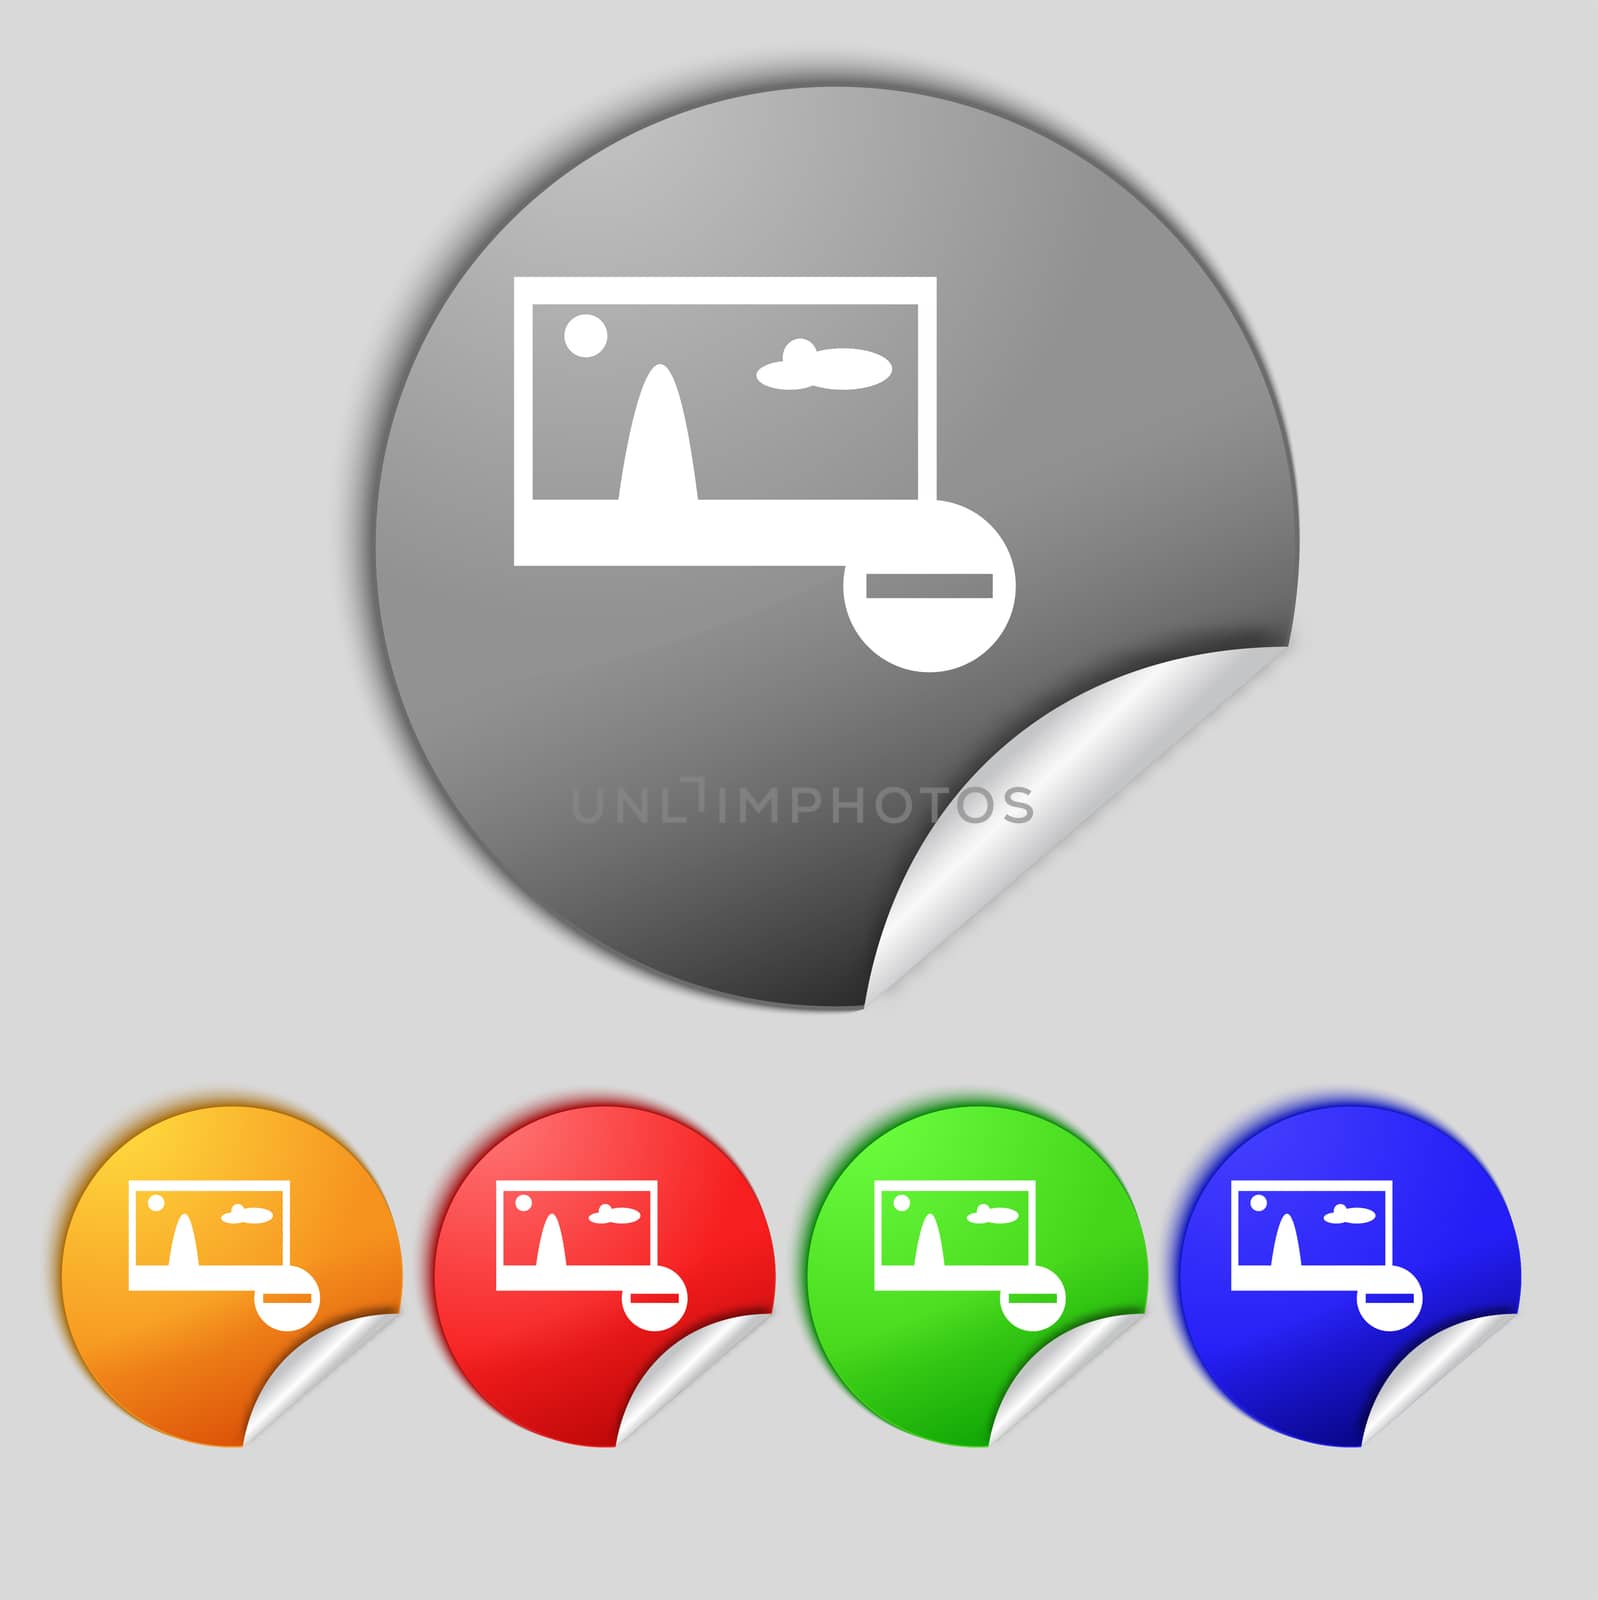 Minus File JPG sign icon. Download image file symbol. Set colourful buttons. Modern UI website navigation  illustration